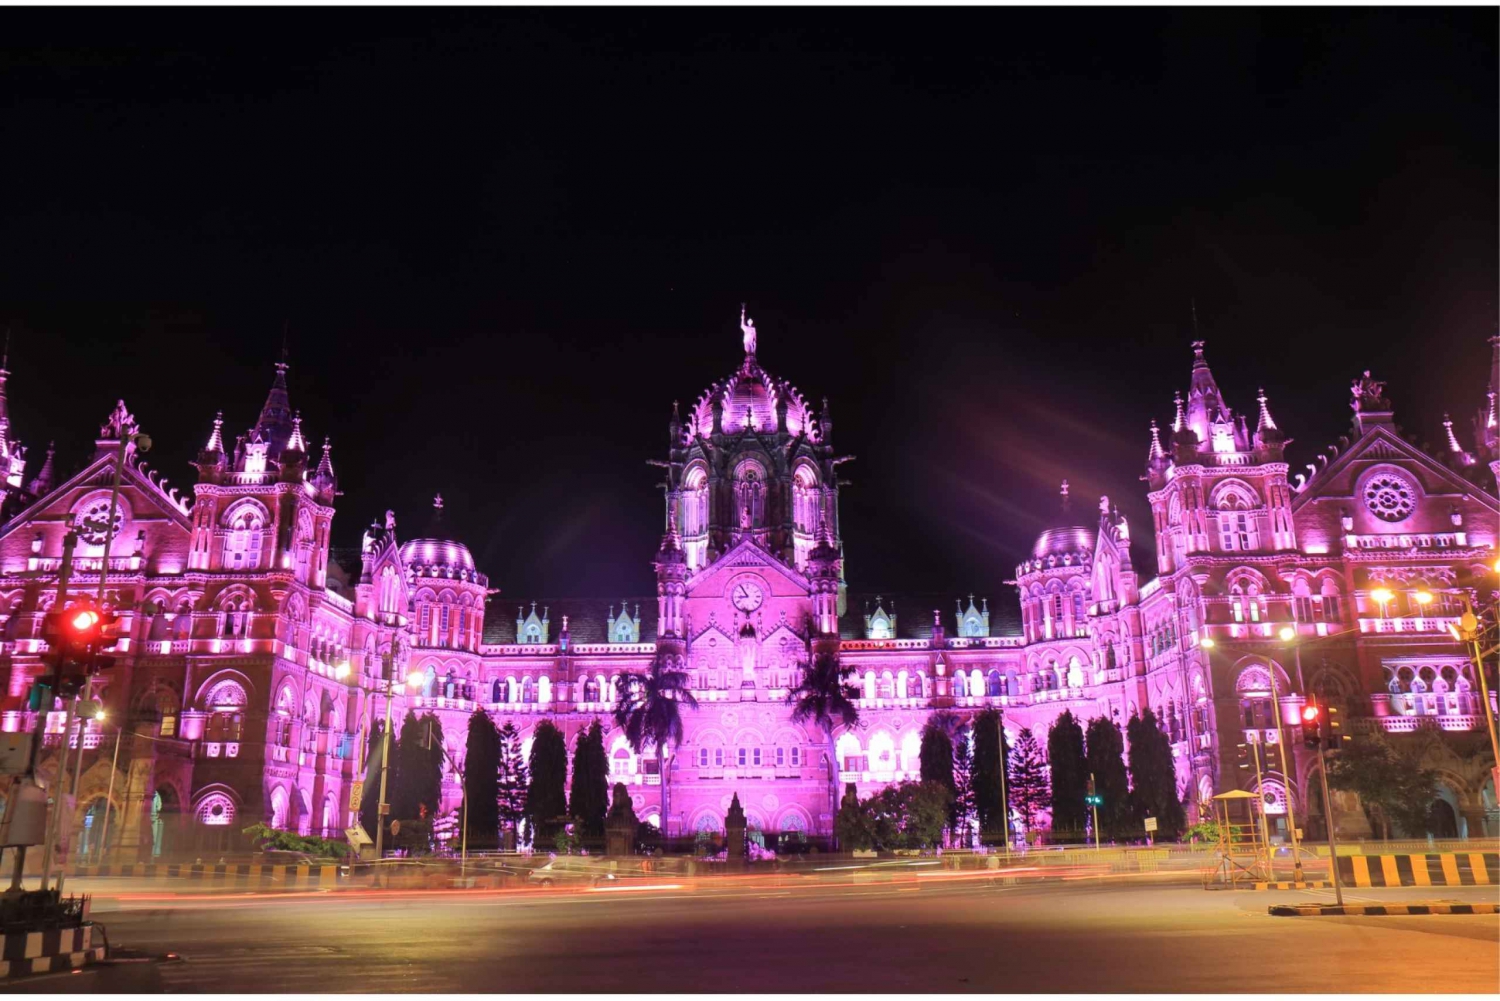 Heritage Mumbai Photography Tour geführter Spaziergang zum Einfangen von Farbtönen